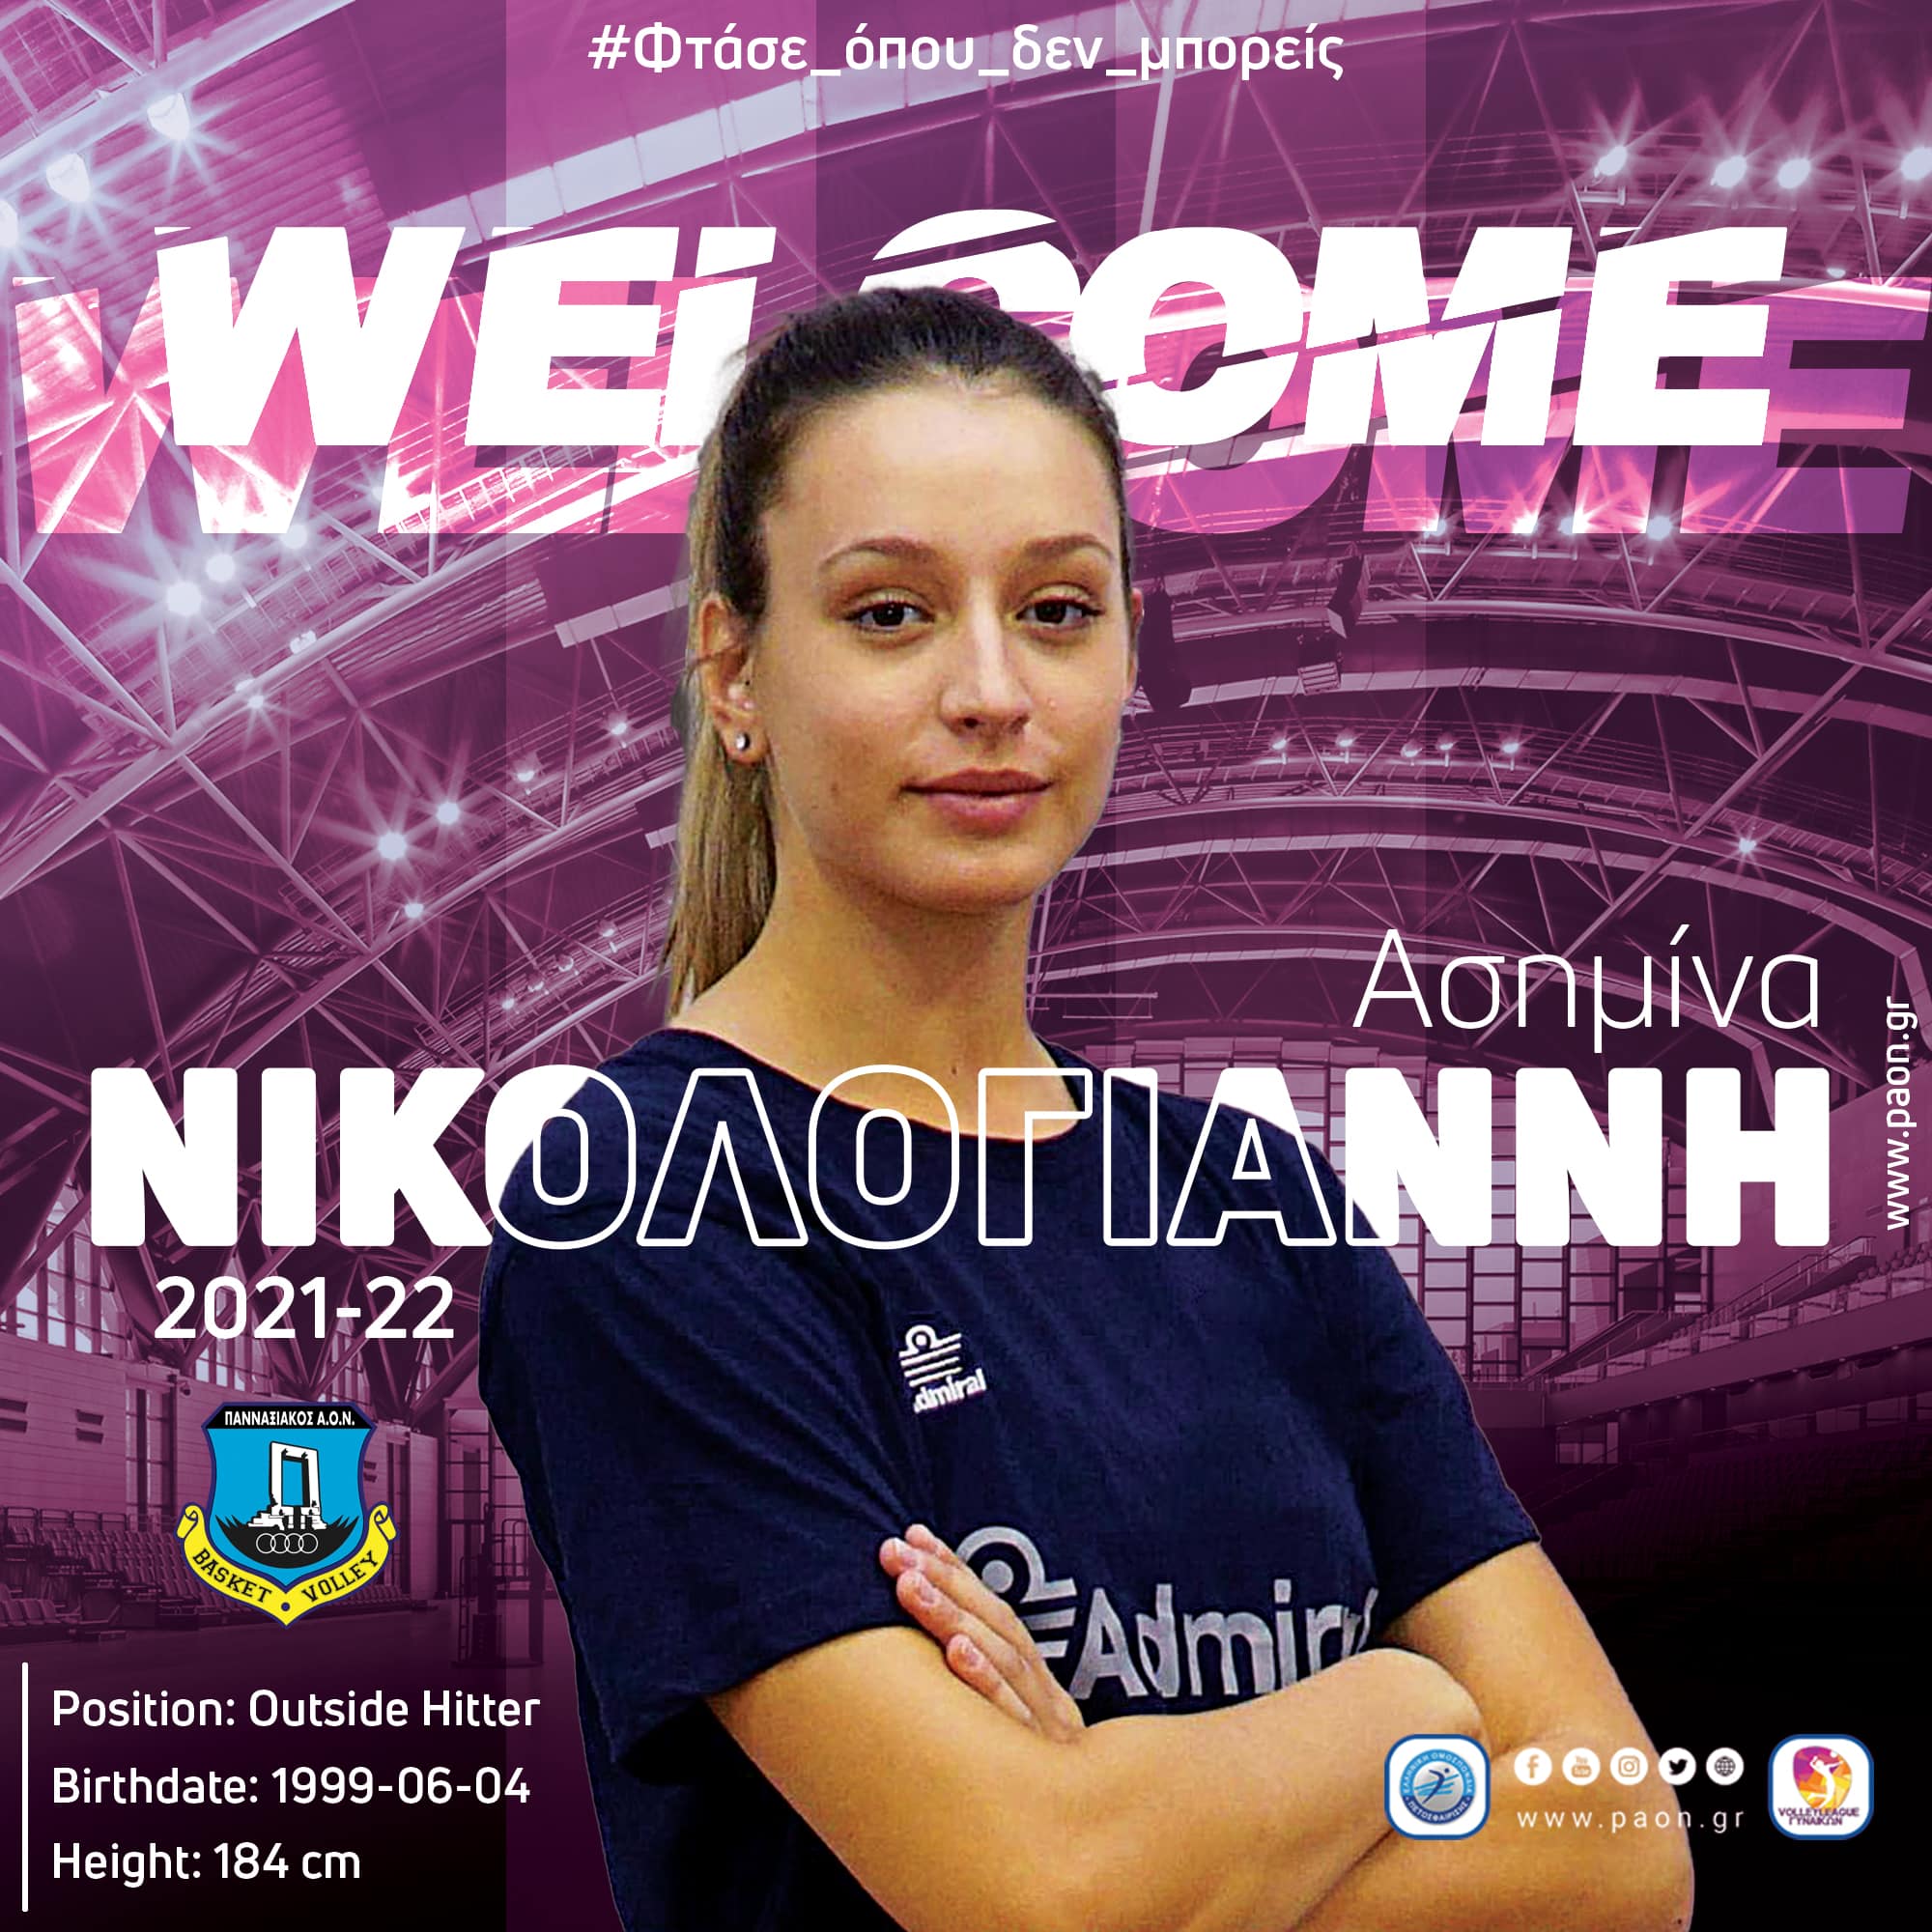 Πανναξιακός ΑΟΝ: "Καλωσορίζουμε την Ασημίνα Νικολογιάννη στον Πανναξιακό ΑΟΝ" - "Εύχομαι να πετύχουμε τους στόχους που έχει θέσει η νέα μου ομάδα!”.